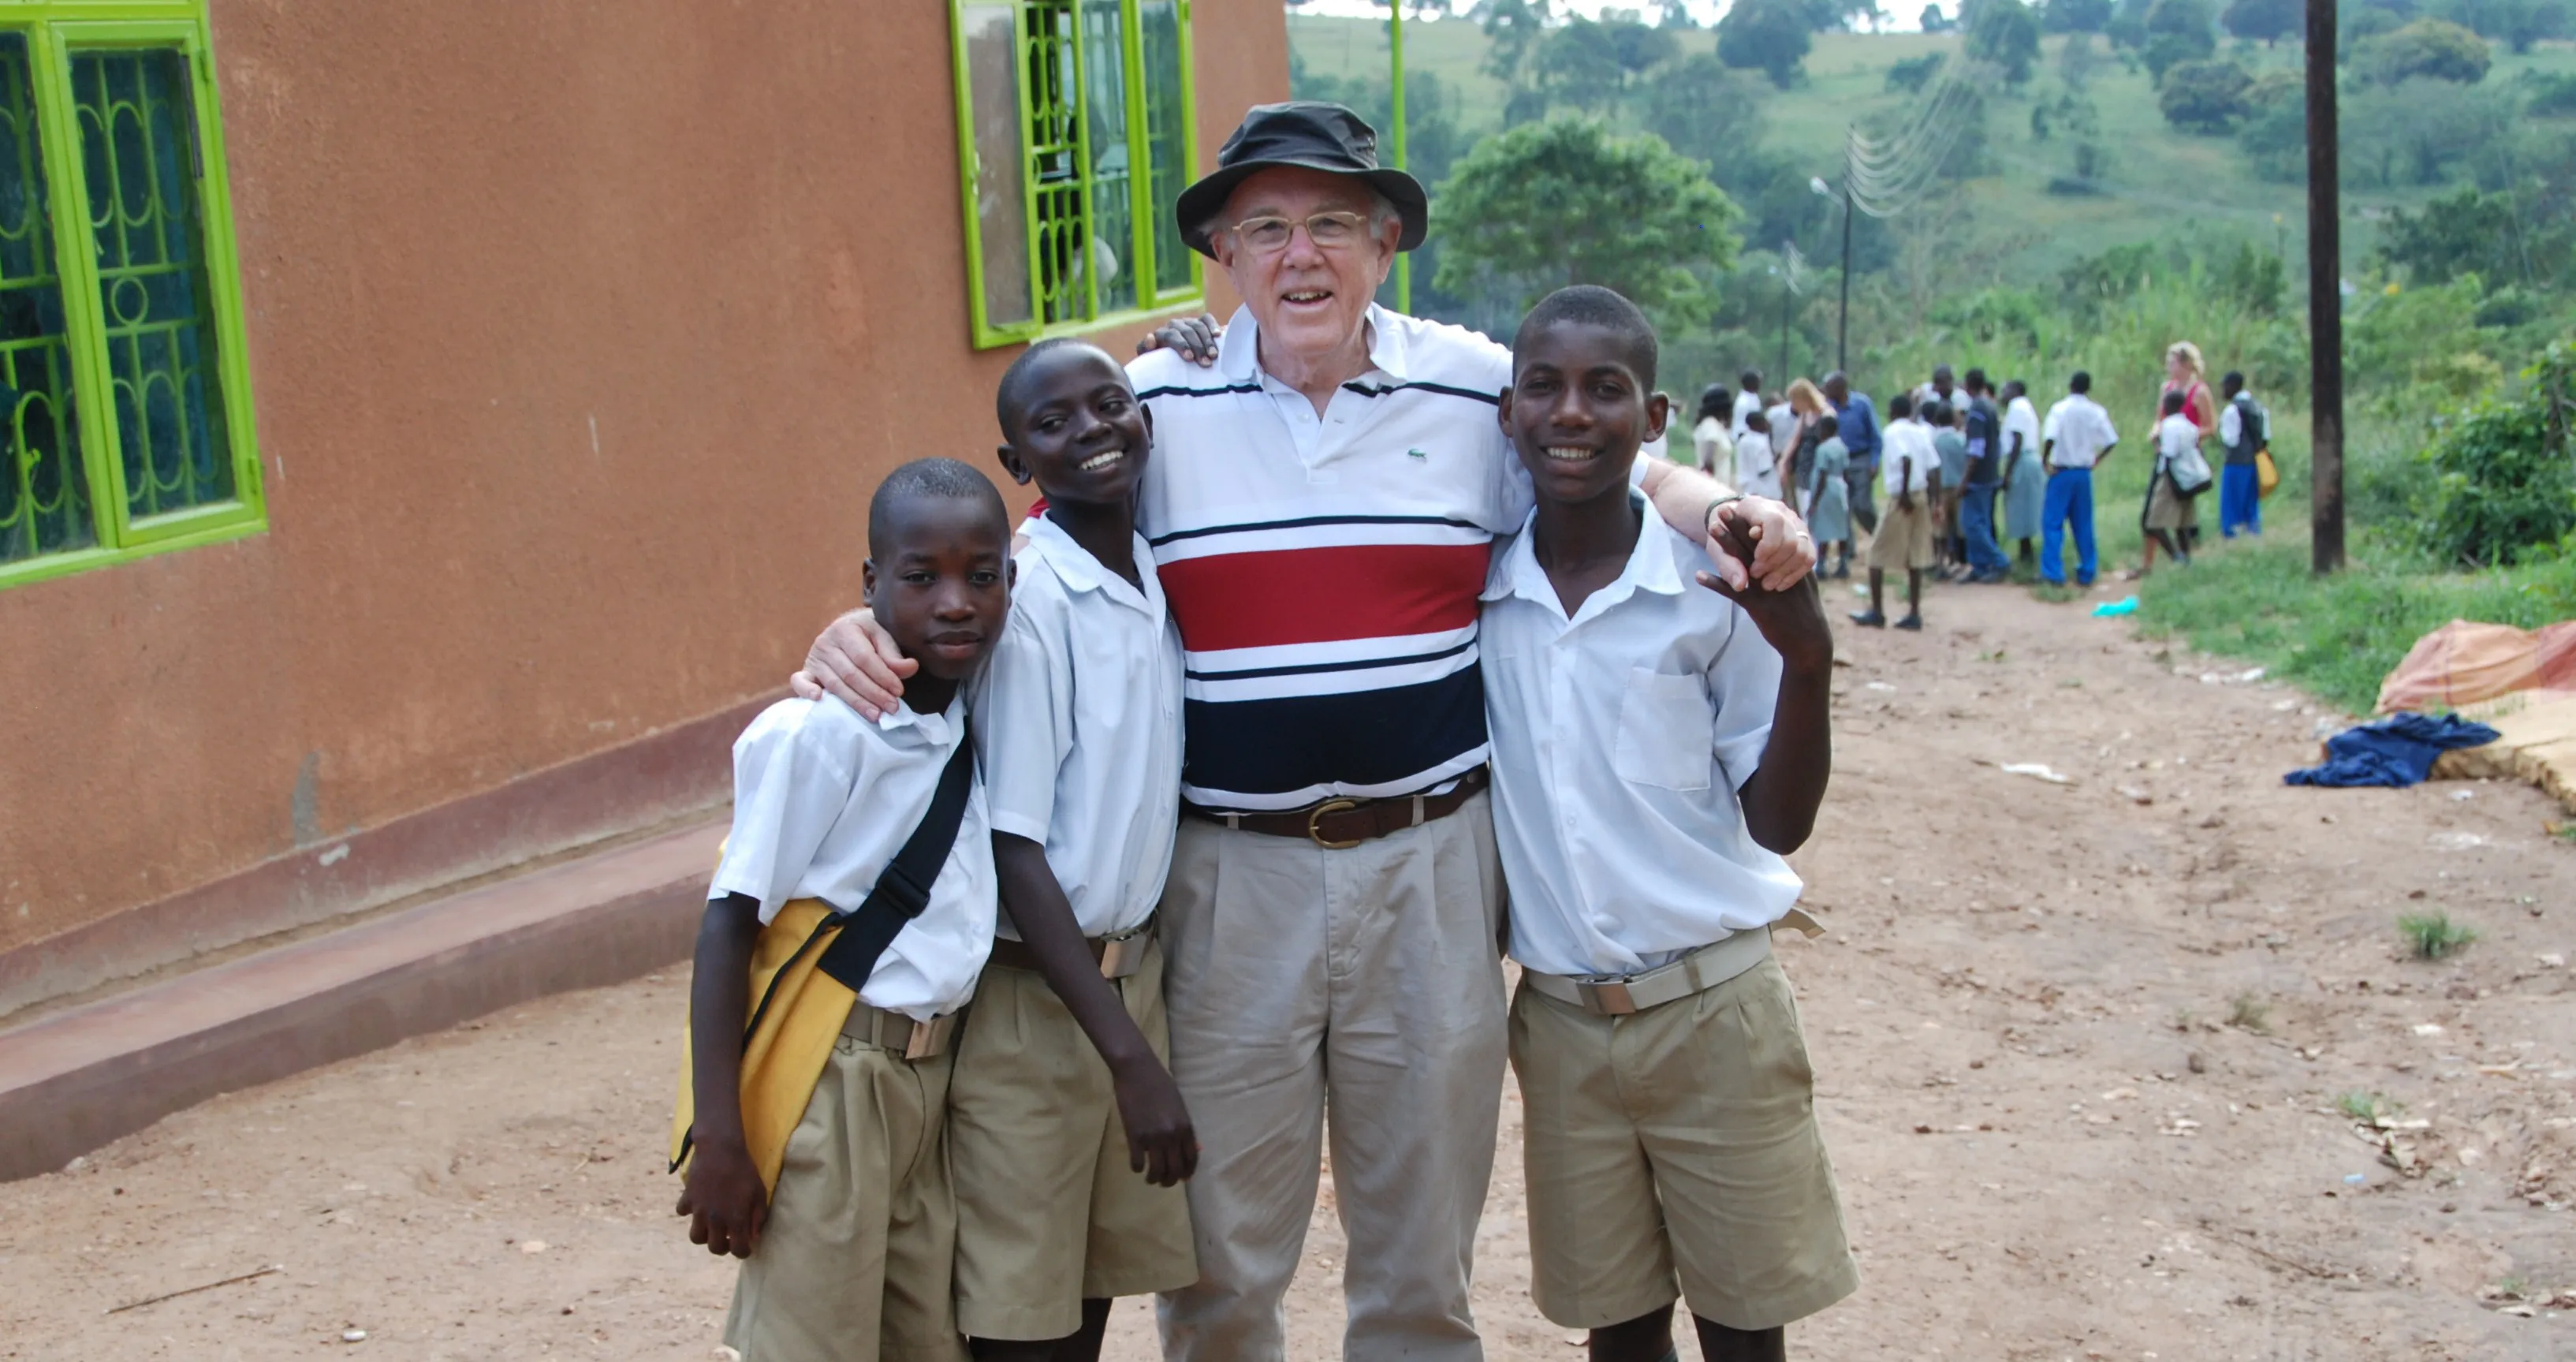 Scott visiting Uganda